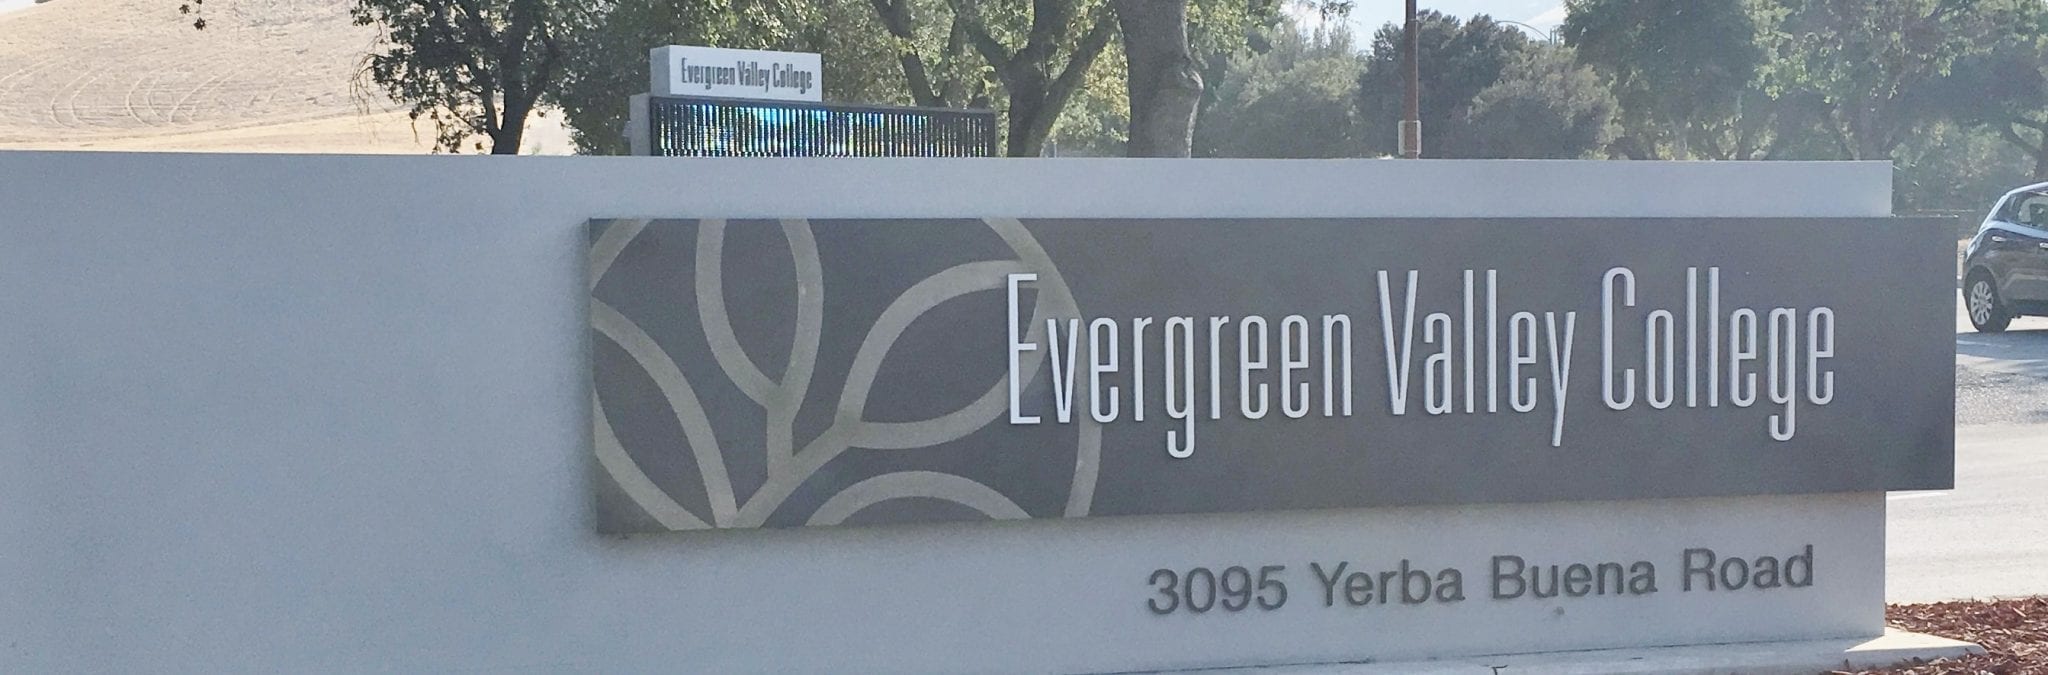 Evergreen Valley College Calsteelfab com